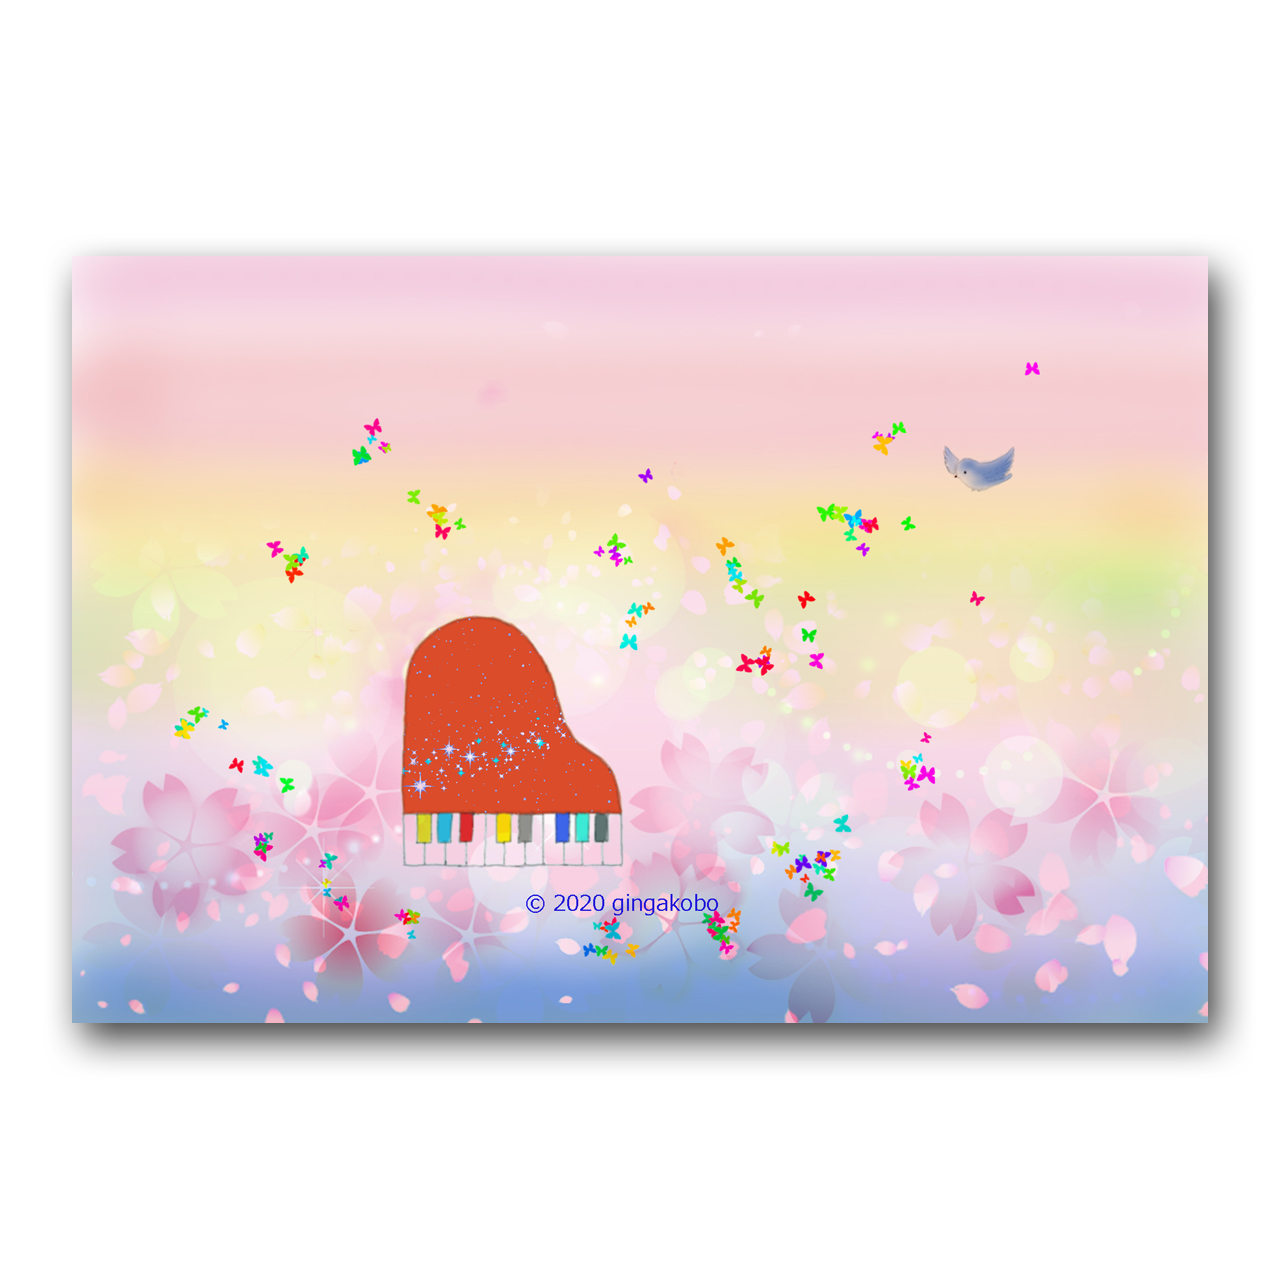 ピアノ曲 春の詩 うた ほっこり癒しのイラストポストカード2枚組 No 1000 Iichi ハンドメイド クラフト作品 手仕事品の通販